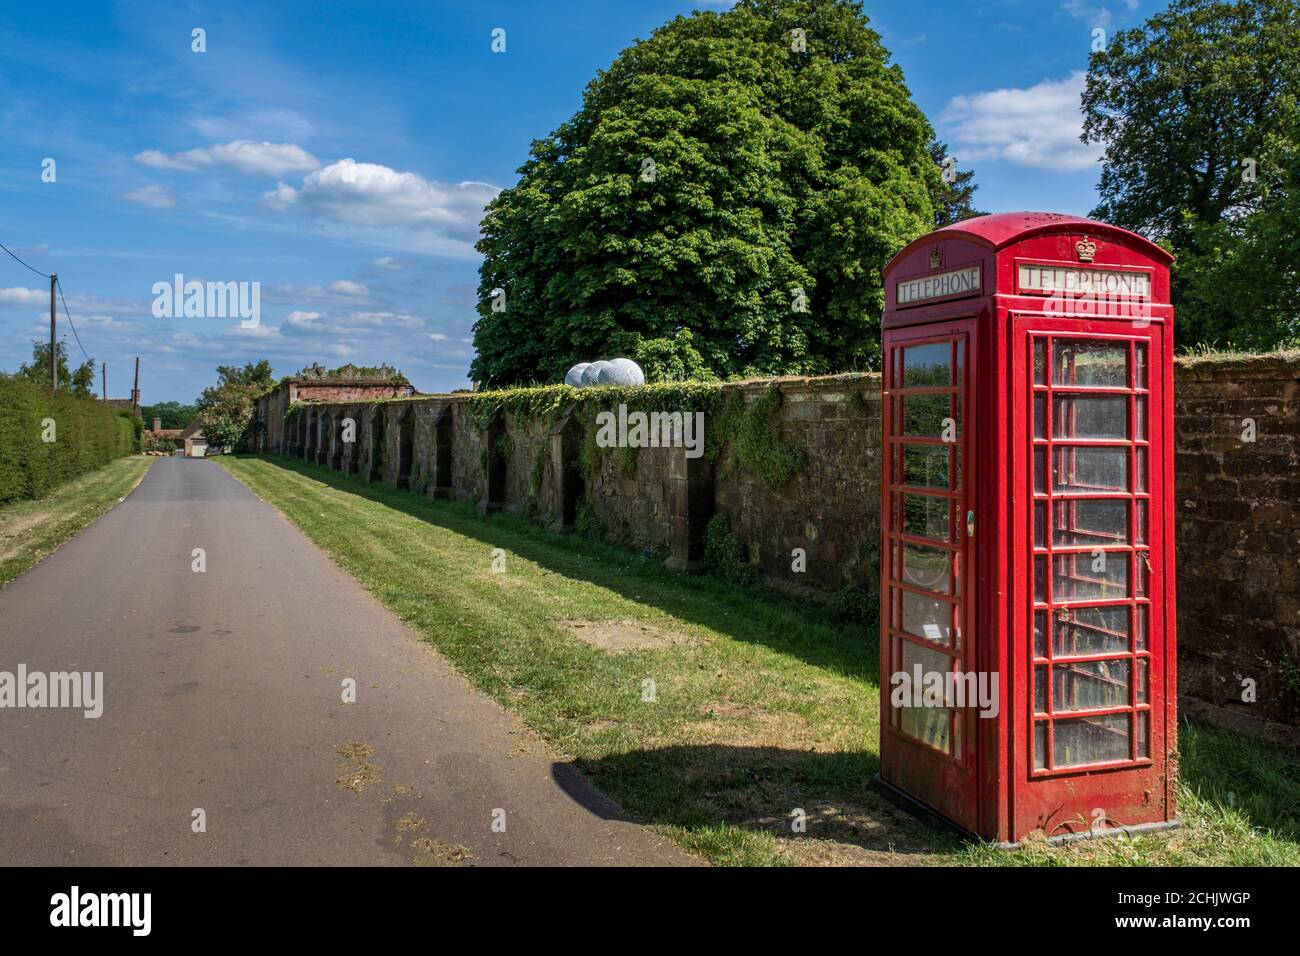 Une boîte téléphonique rouge dans le joli hameau de Nevill Holt, à côté du parc de Nevill Holt Hall, Leicestershire, Angleterre, Royaume-Uni Banque D'Images